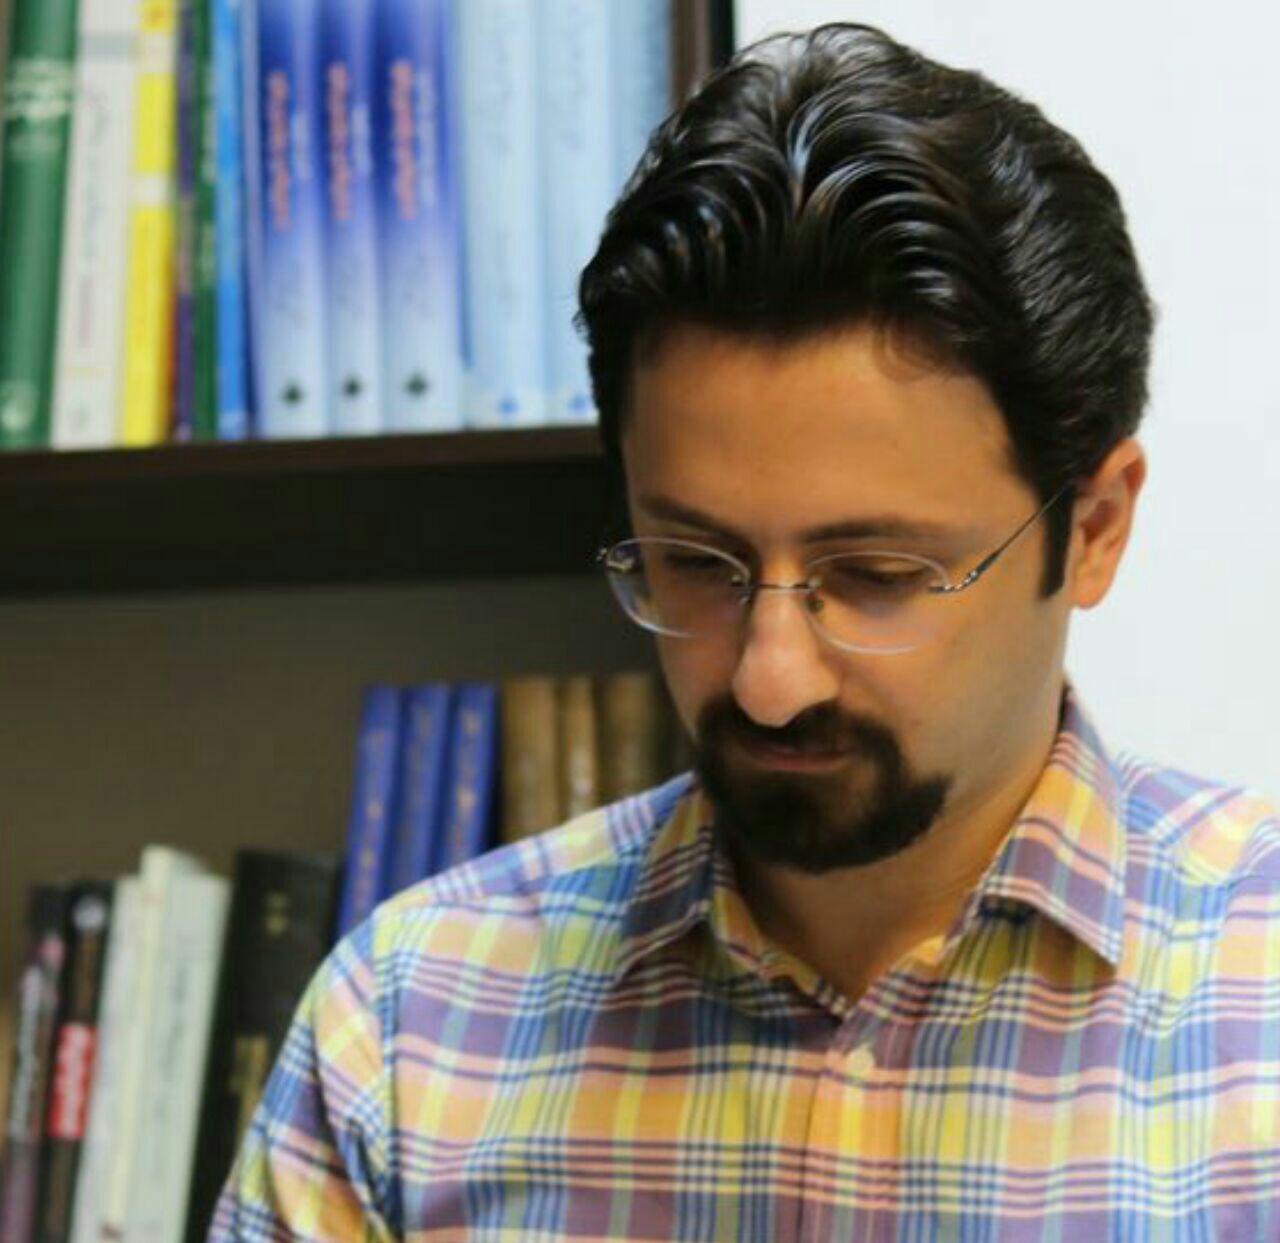 فروید و روانکاوی اجتماعی ایران | دکتر عباس نعیمی جورشری (جامعه شناس) | منتشر در روزنامه آرمان ۹۶.۴.۲۵